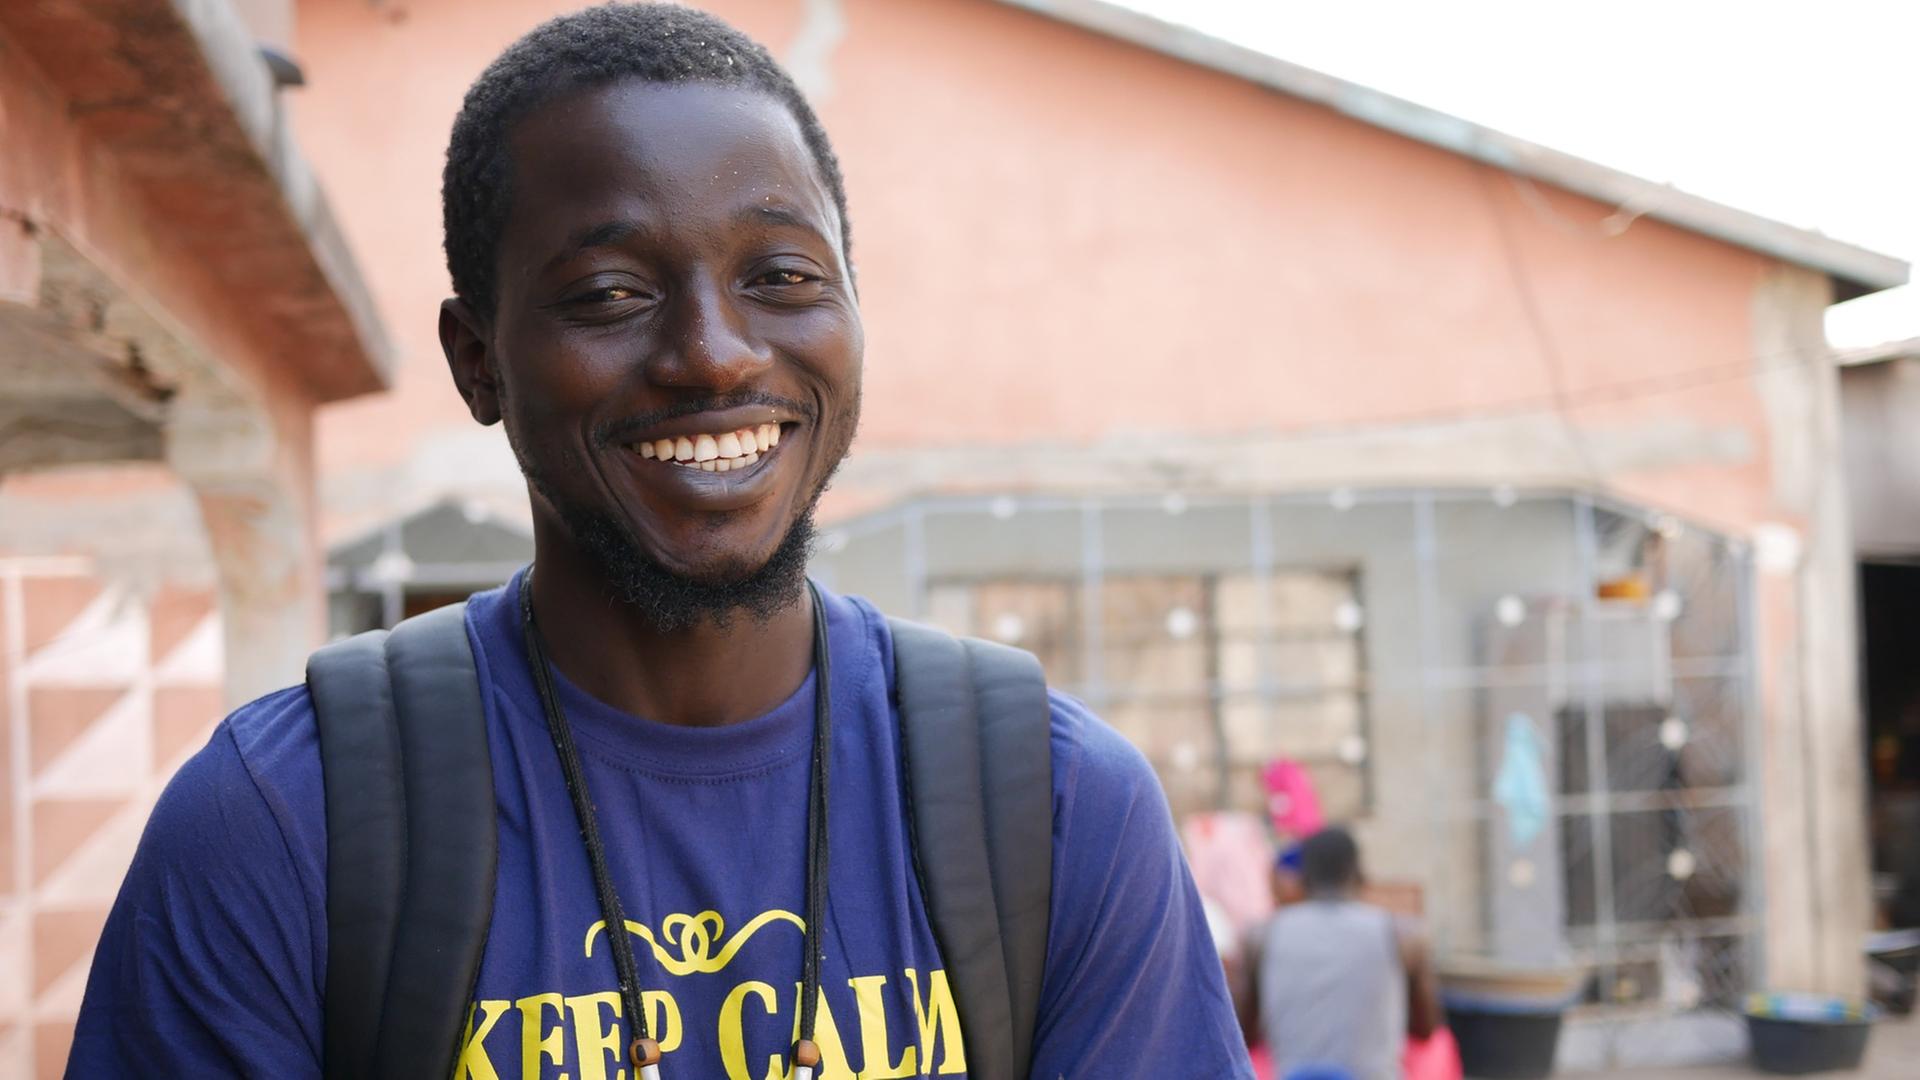 Moustapha Sallah ist in seine Heimat Gambia zurückgekehrt. Er will junge Leute von der Flucht abhalten und sie ermutigen, ihre Zukunft im eigenen Land aufzubauen.